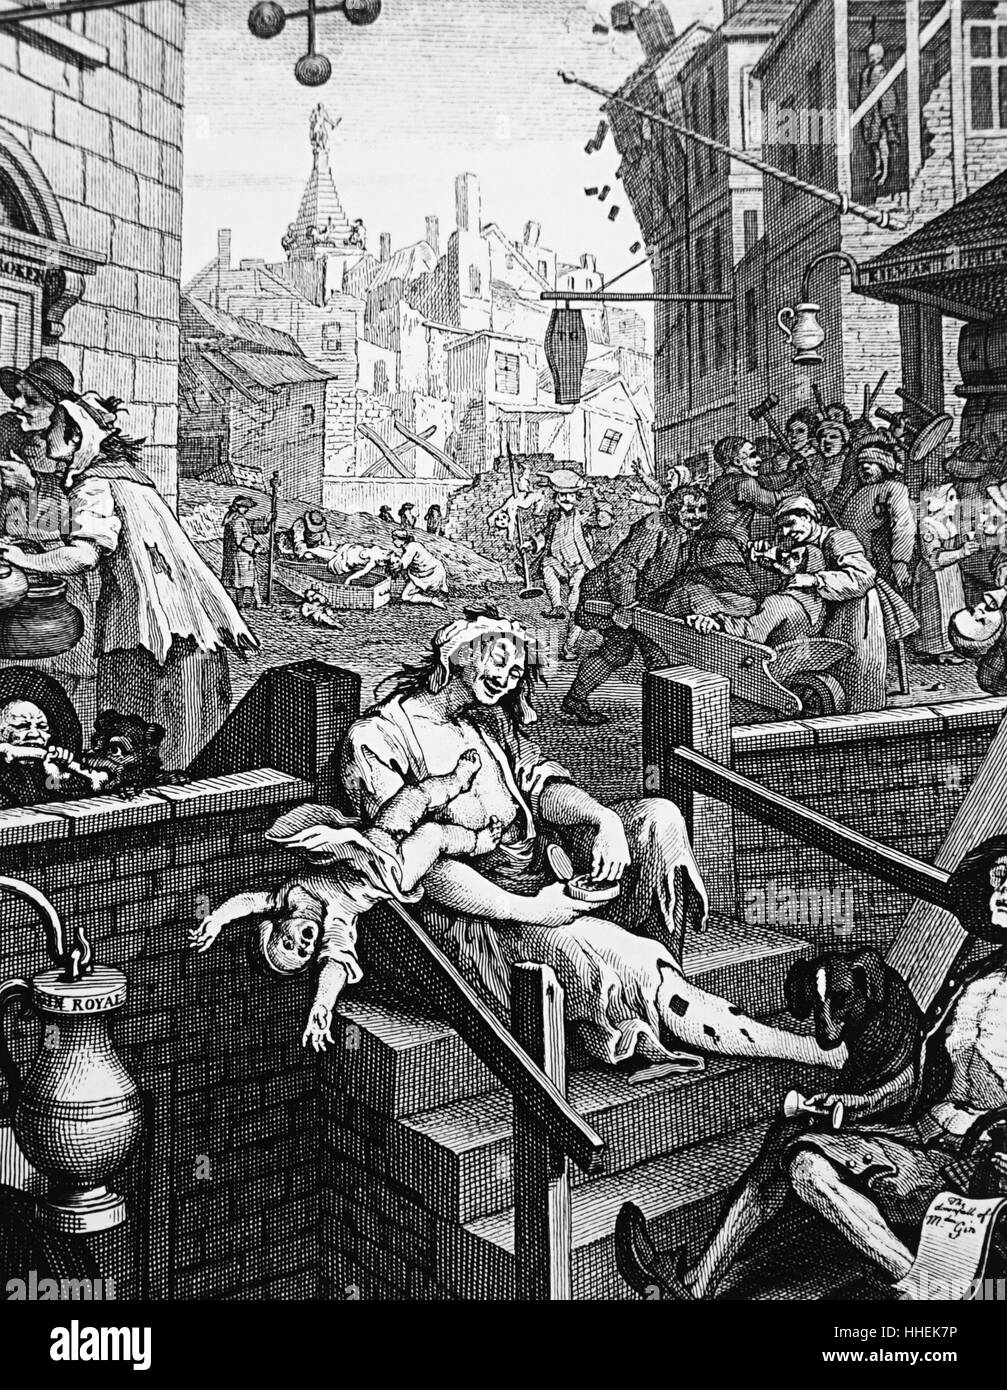 Gravure intitulée 'Gin Lane' par William Hogarth (1697-1764) illustrant les méfaits de la consommation effrénée de spiritueux. En date du 18e siècle Banque D'Images